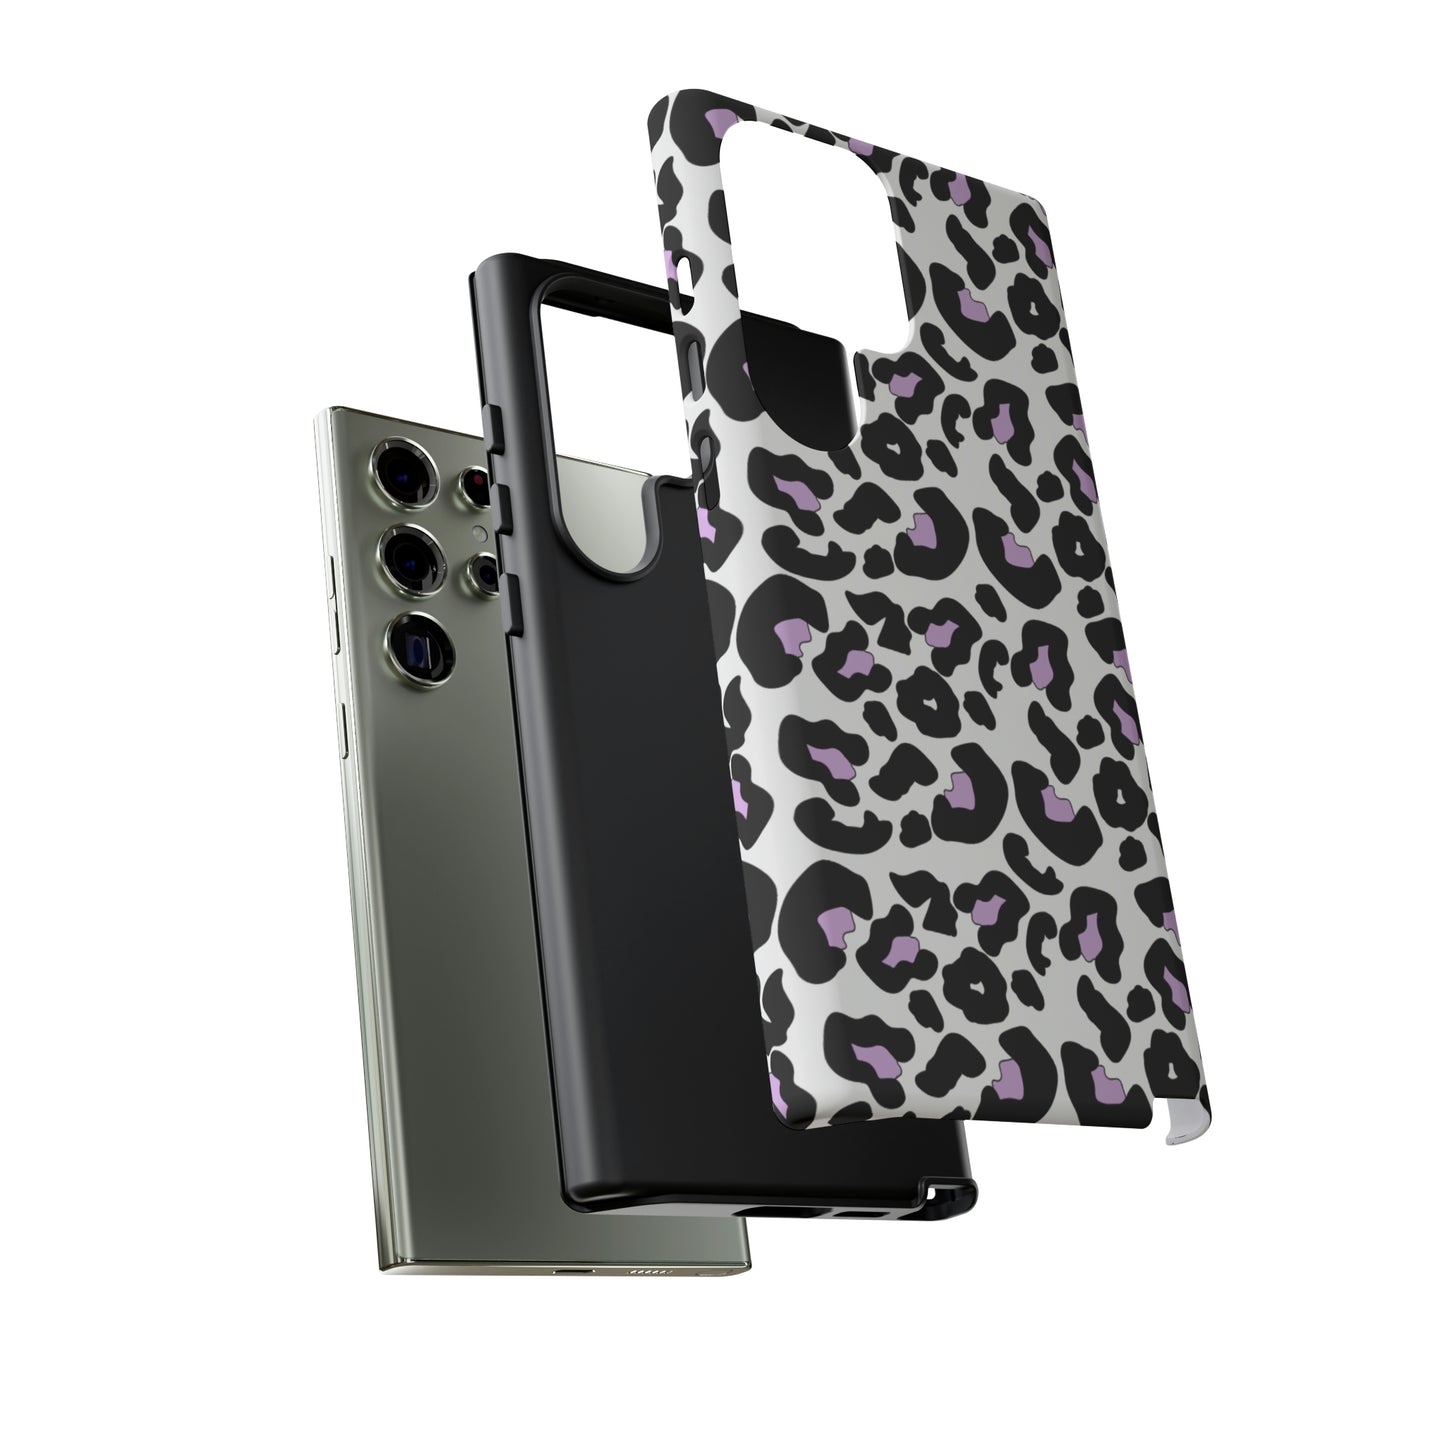 Cheetah- Tough Phone Cases